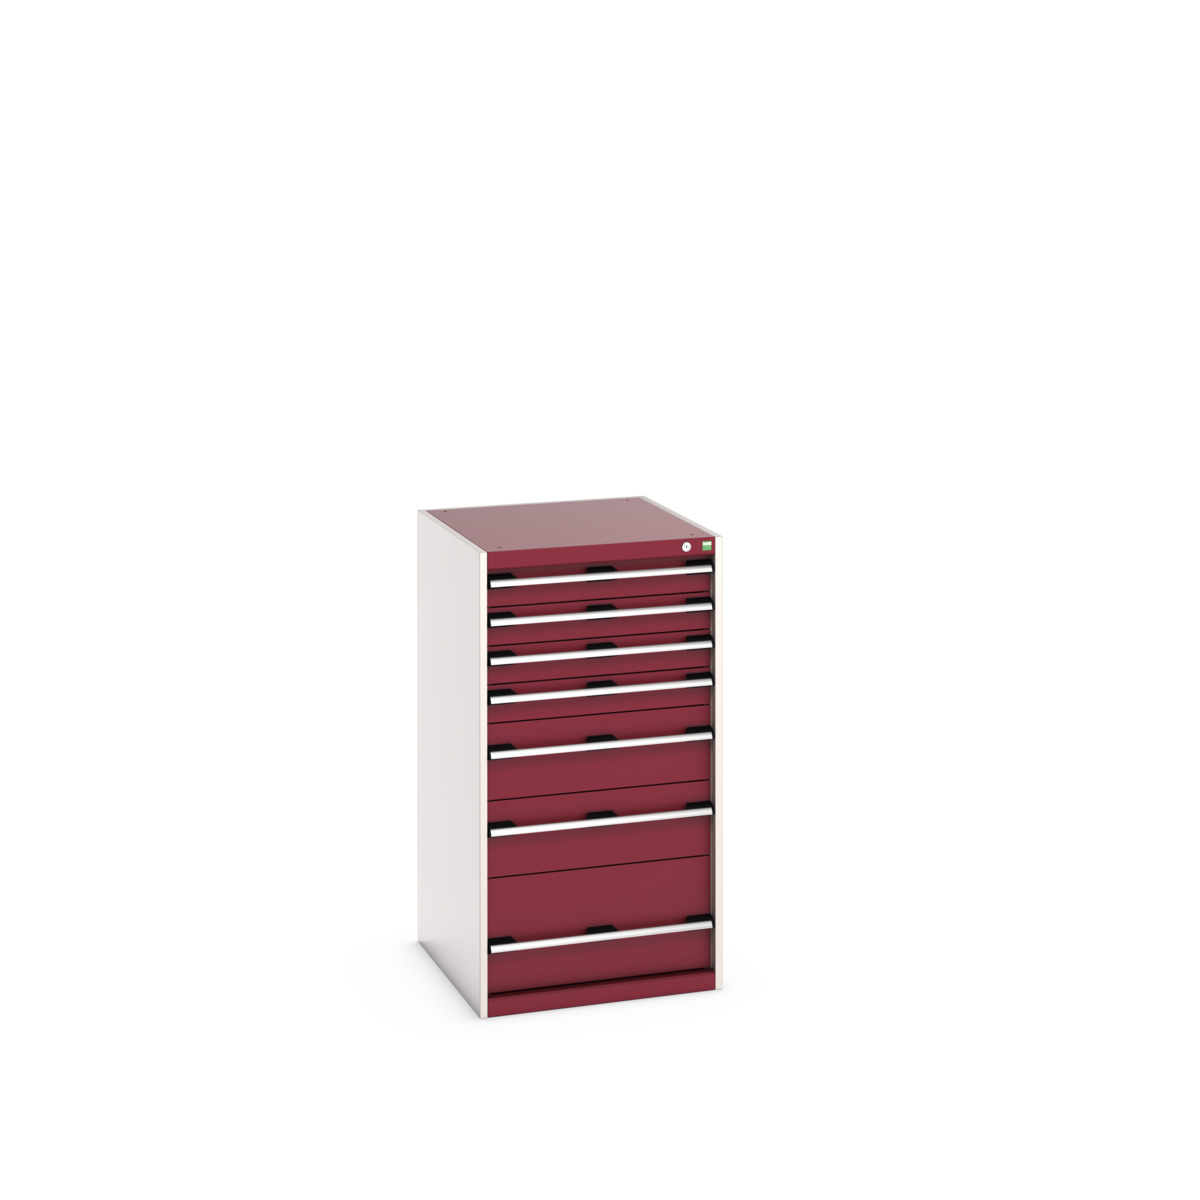 40027037.24V - cubio drawer cabinet